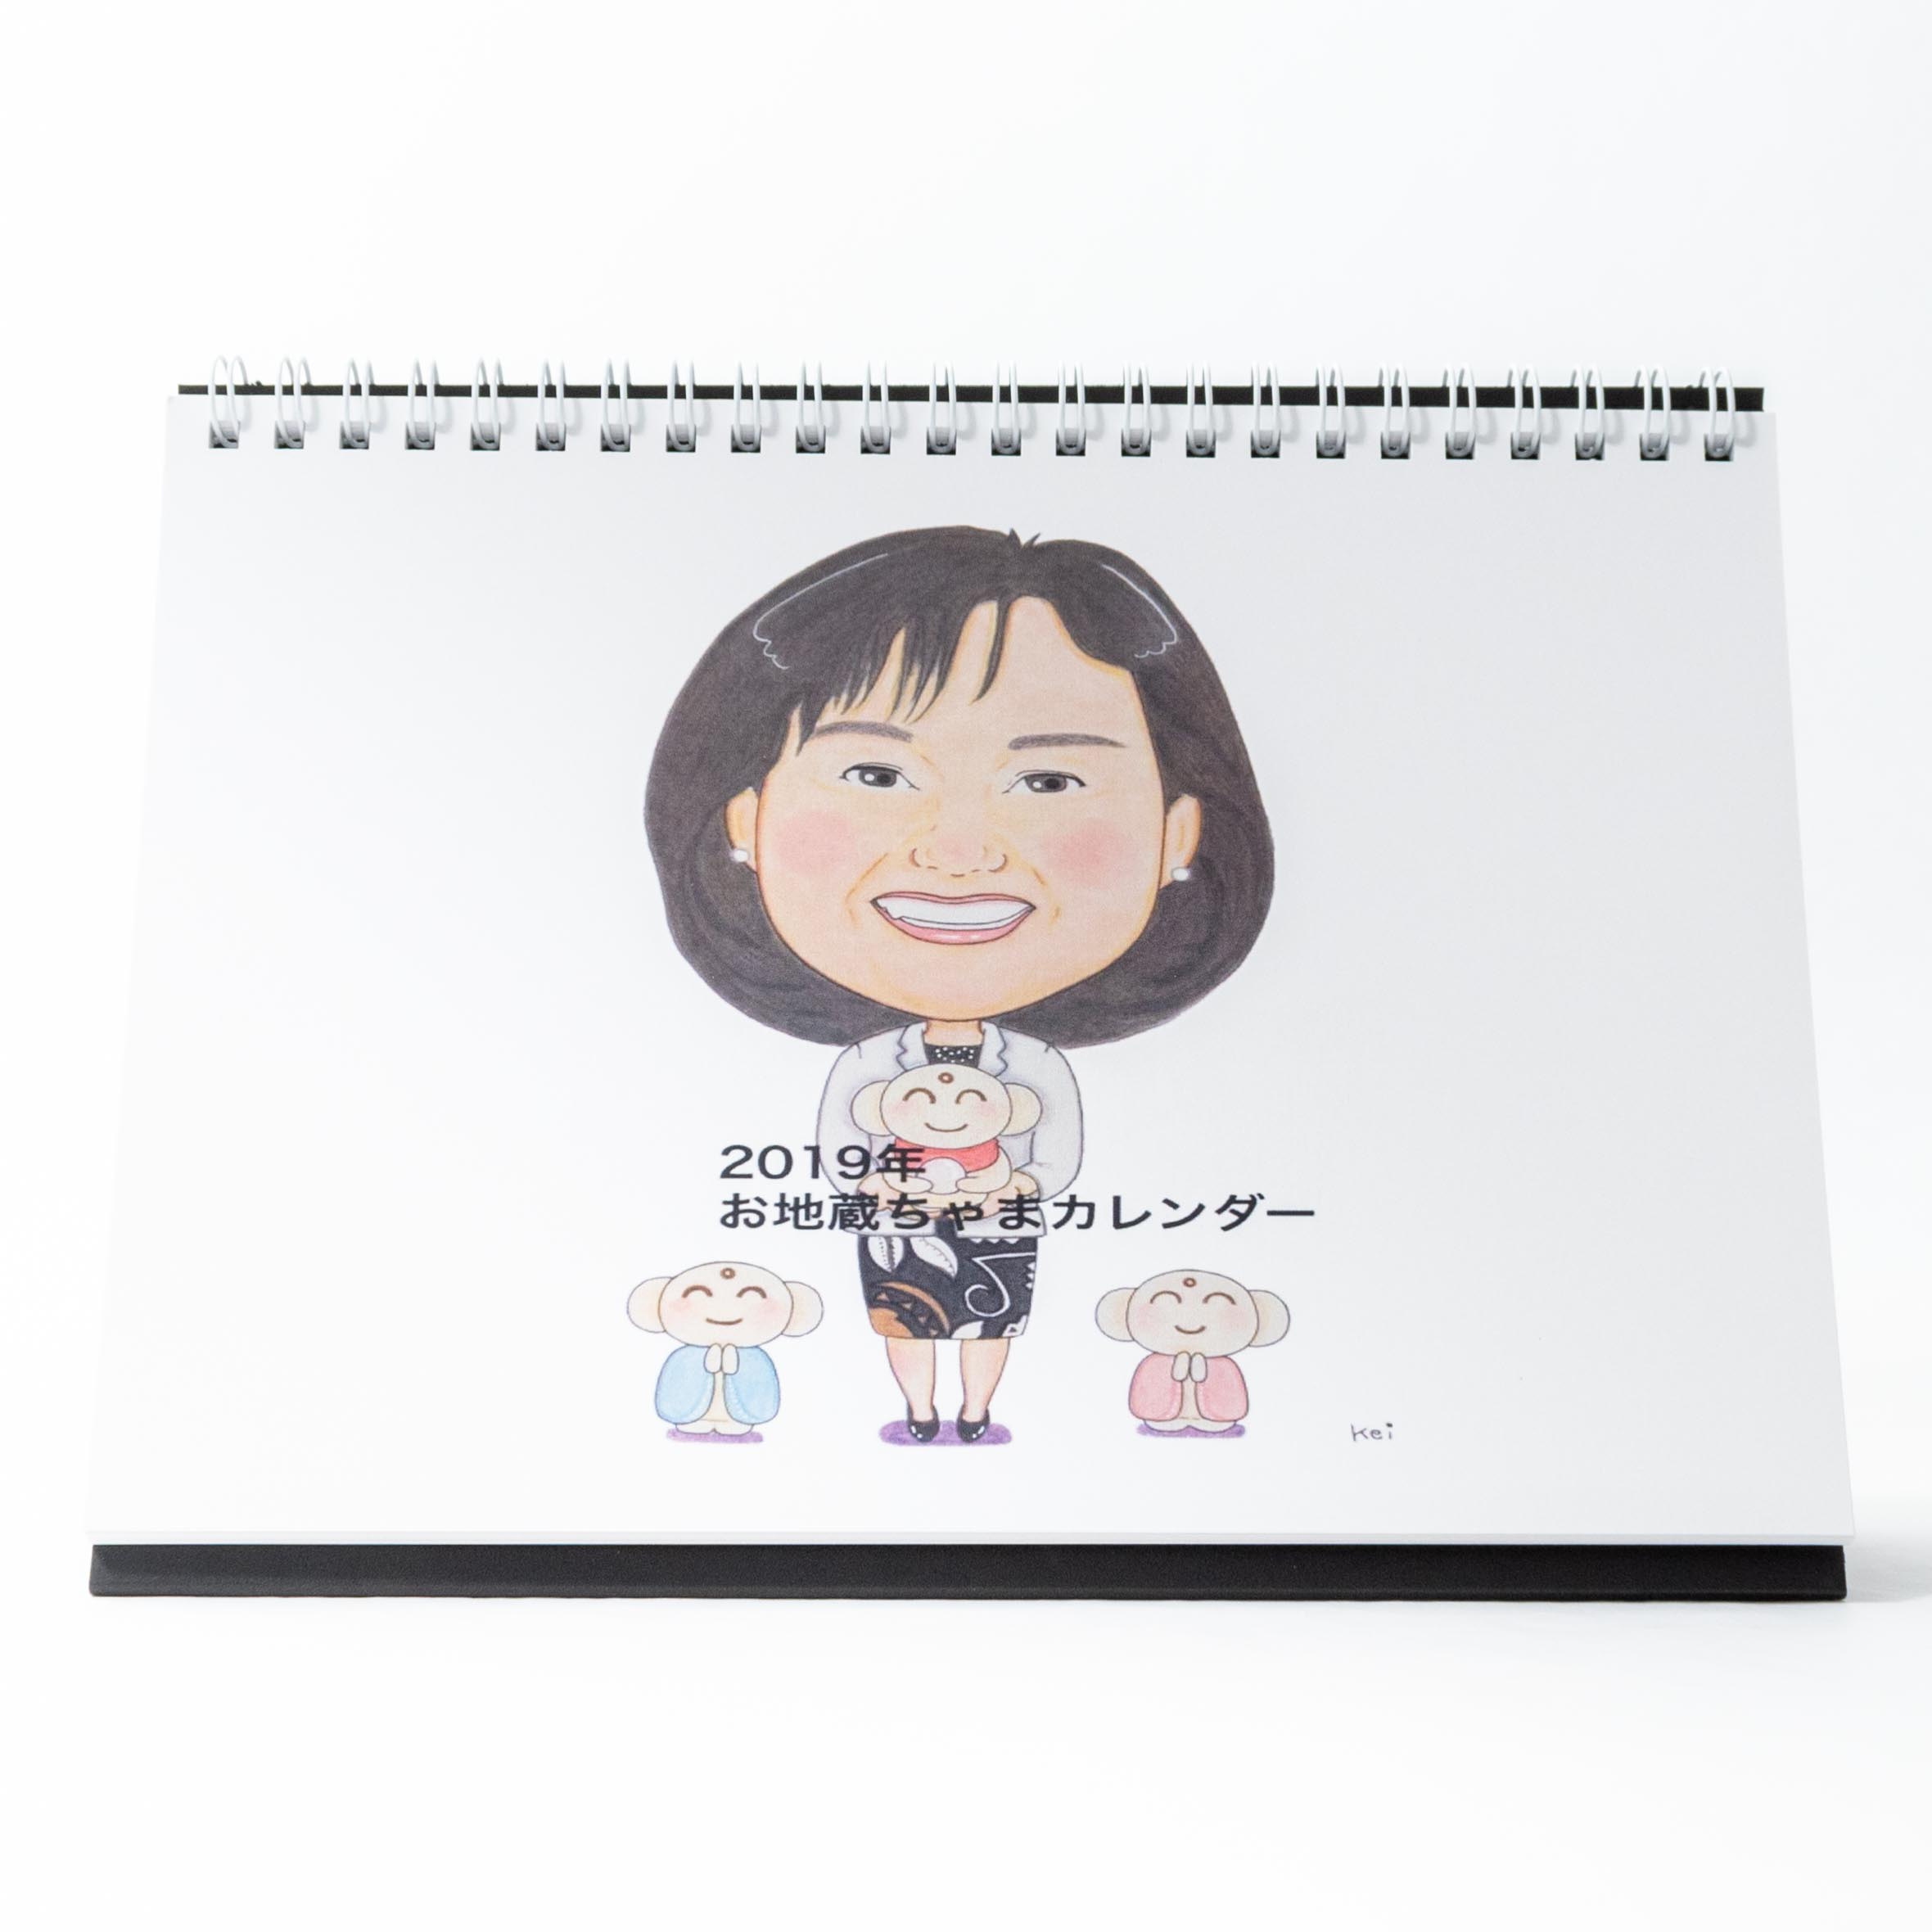 「北田　泰子:しいちゃんのお地蔵ちゃま 様」製作のオリジナルカレンダー